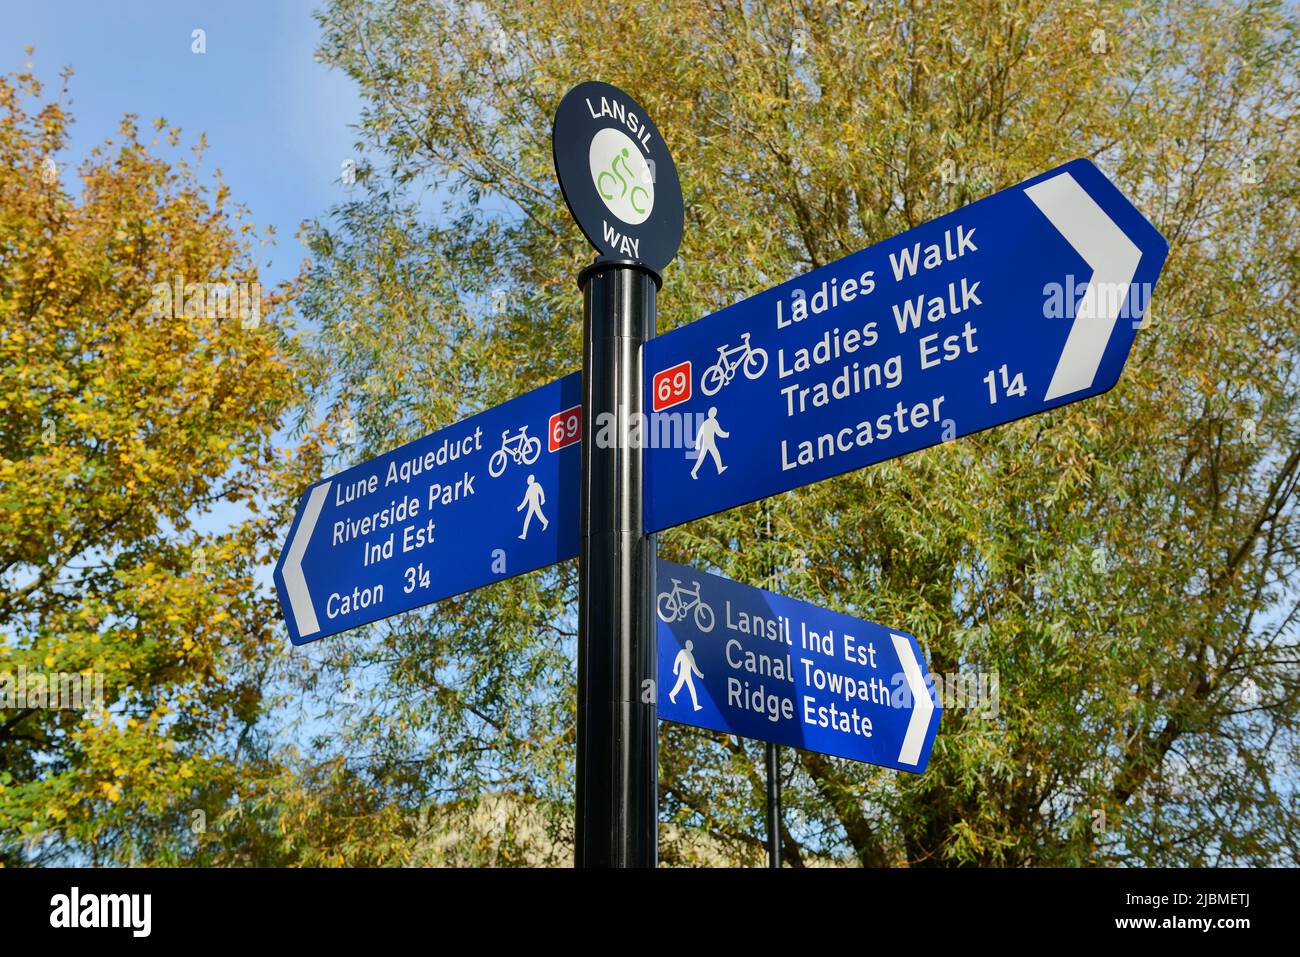 Un panneau sur la voie du Lanais pointant vers diverses pistes cyclables et de marche dans le centre-ville de Lancaster au Royaume-Uni Banque D'Images